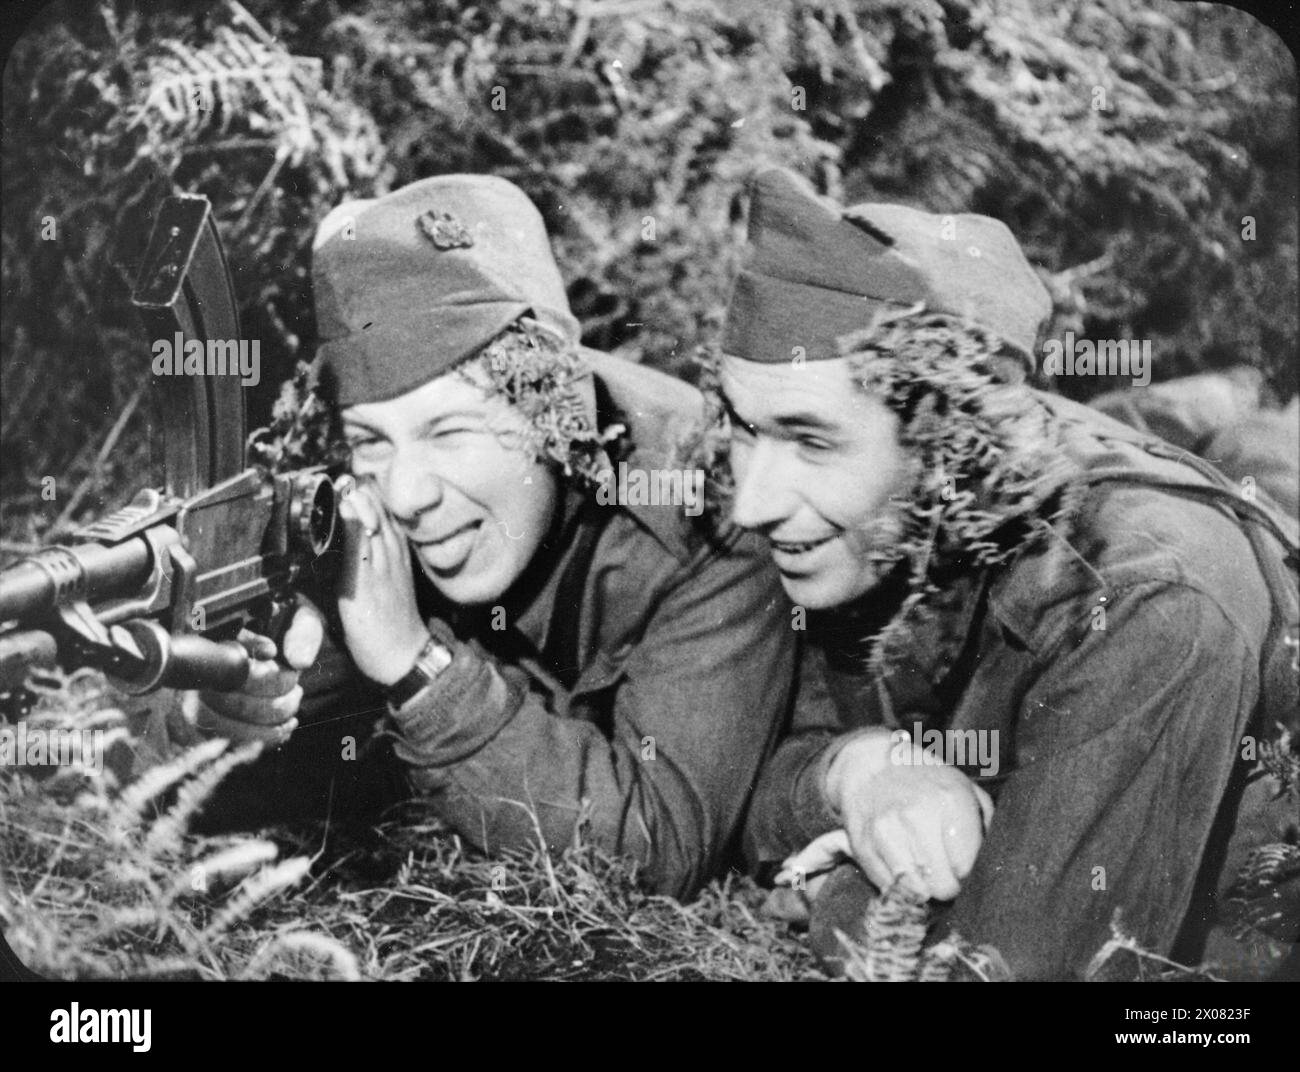 Blanco y negro - todavía de la película de entrenamiento del ejército británico de 1943 'The New Lot' (DRA 443).'Ted' (Bernard Miles) y 'Keith' (Peter Ustinov) pusieron su entrenamiento con armas de guerra a buen uso Foto de stock